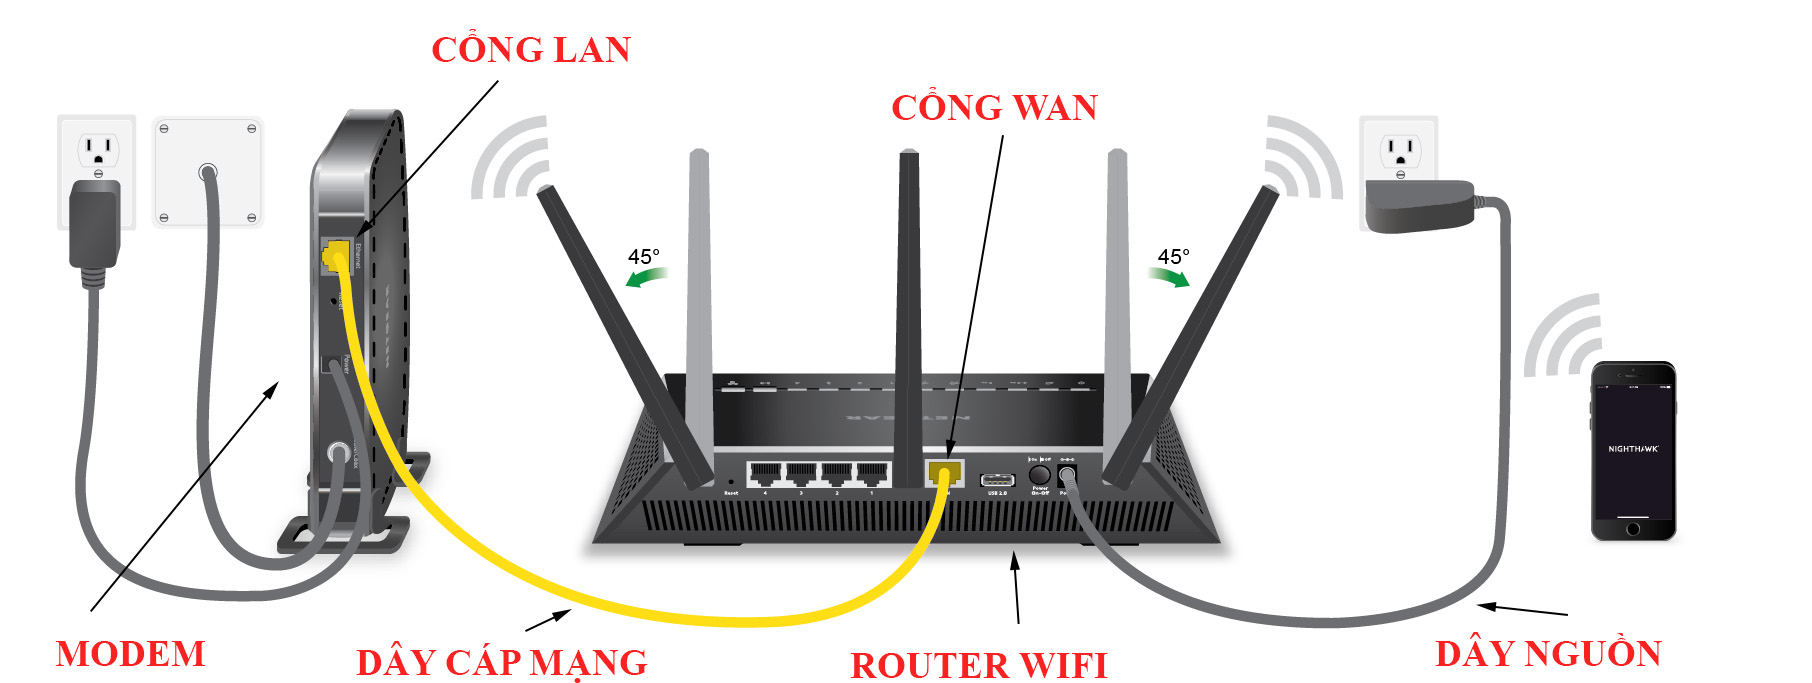 hướng dẫn kết nối Router WiFi và Modem